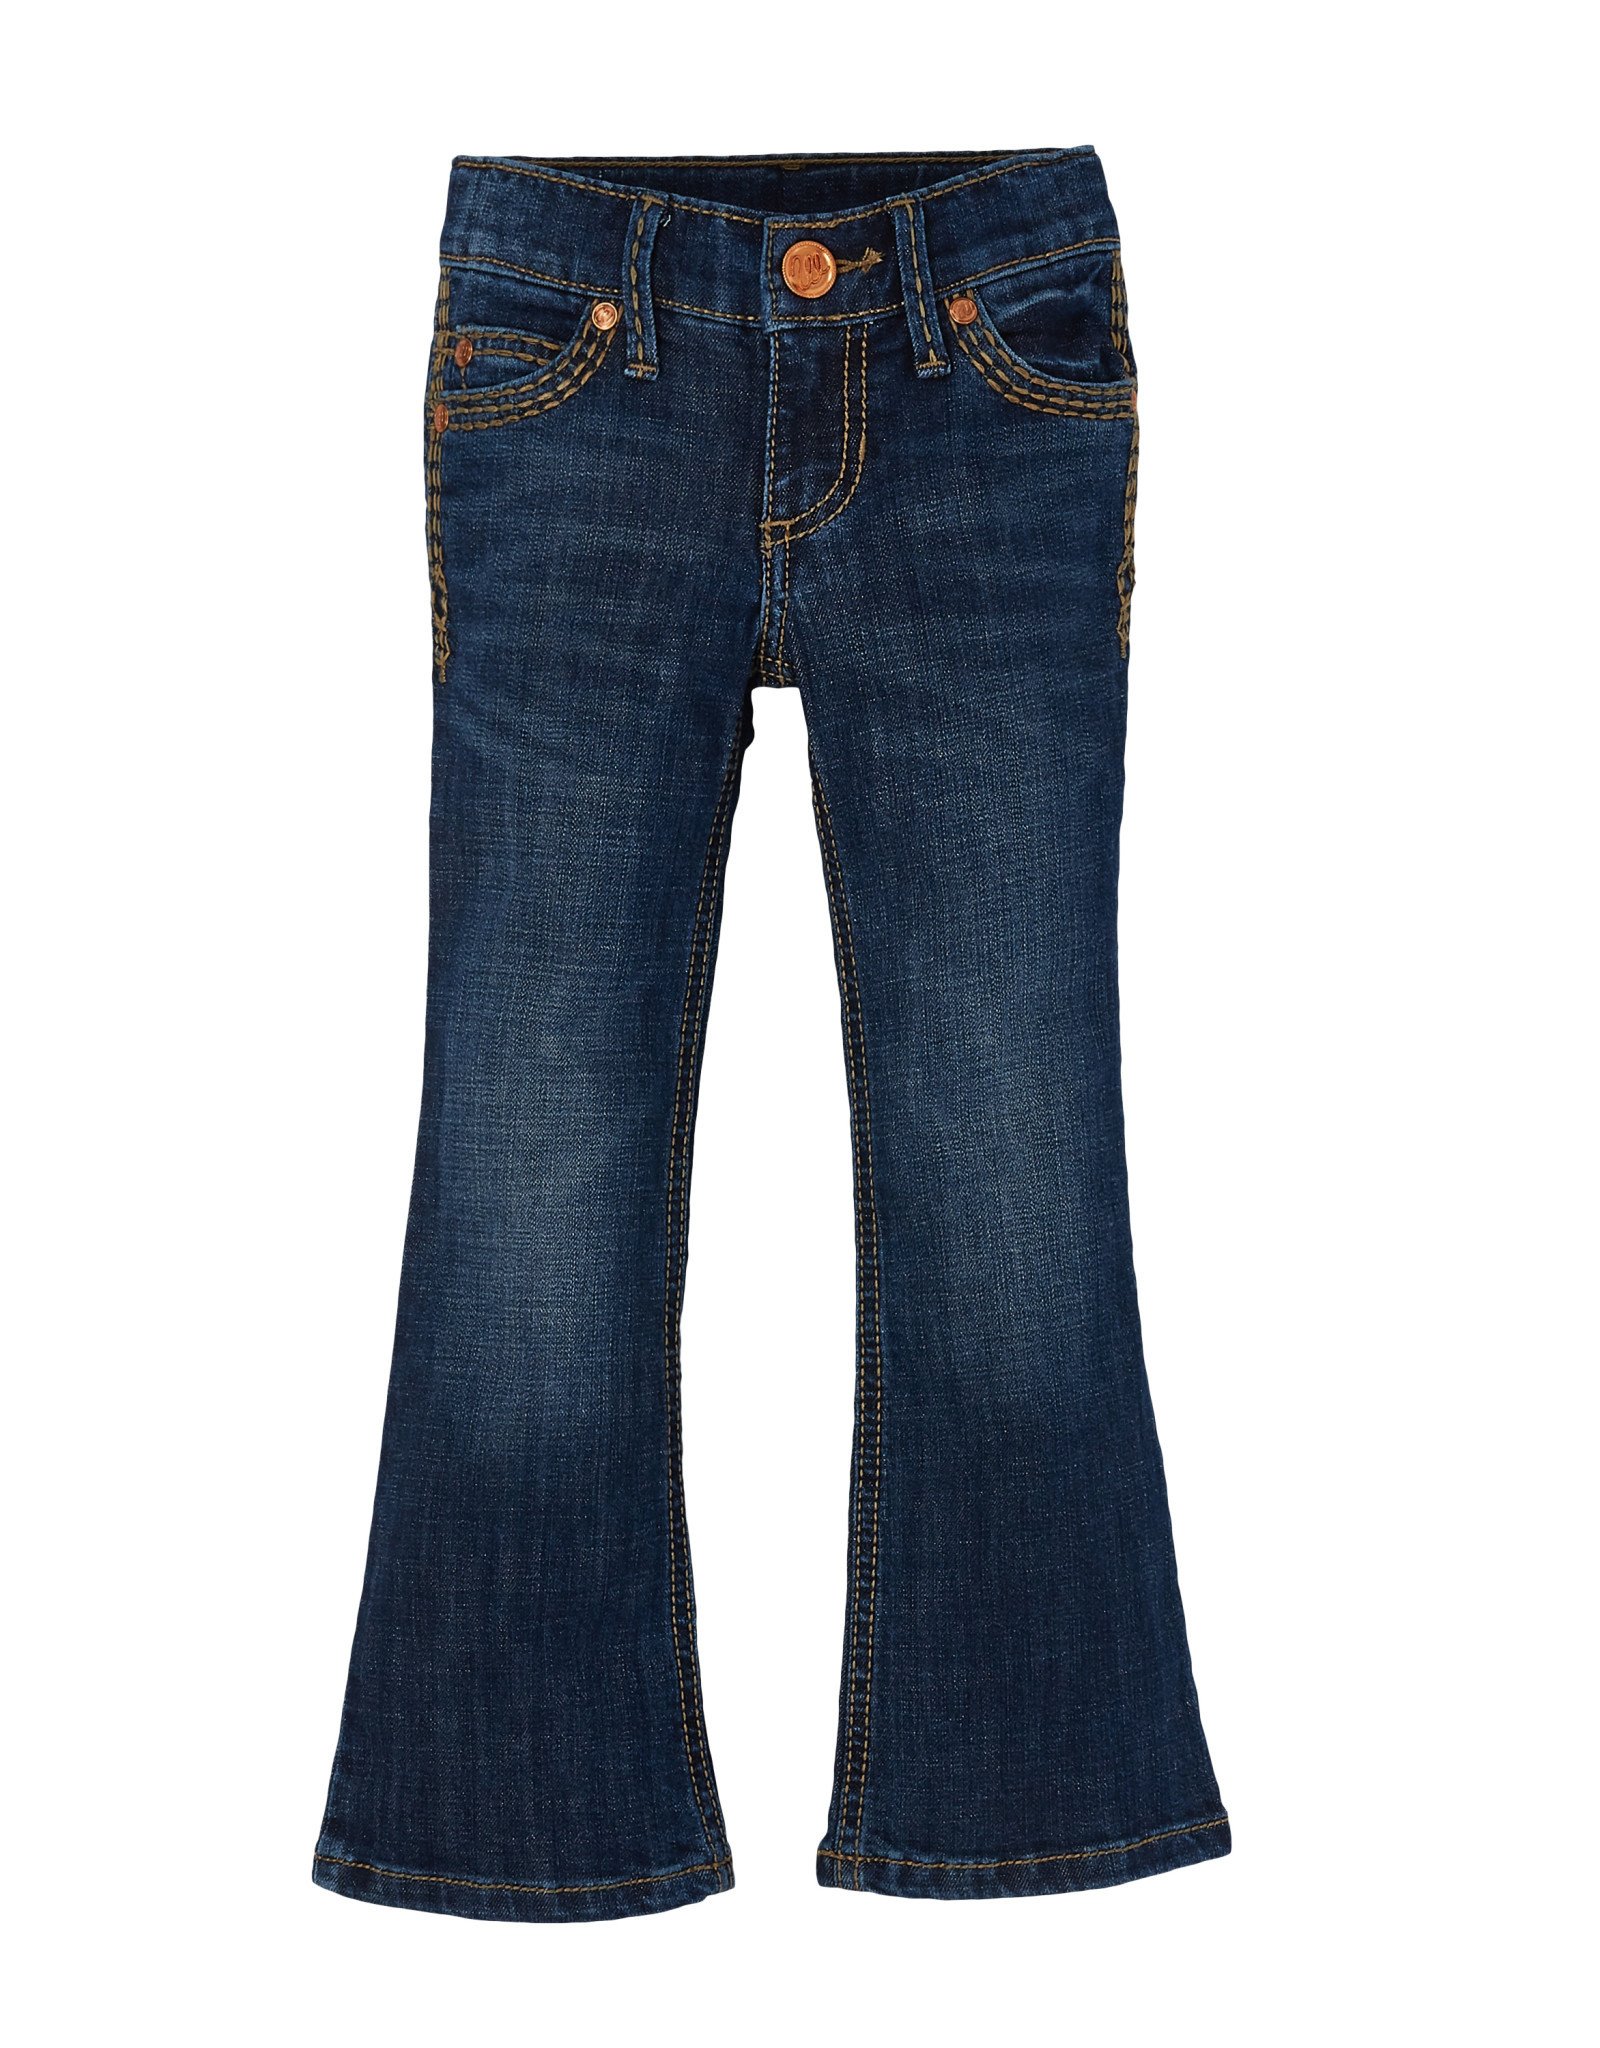 Girls Wrangler Retro Jeans 9MWGHS